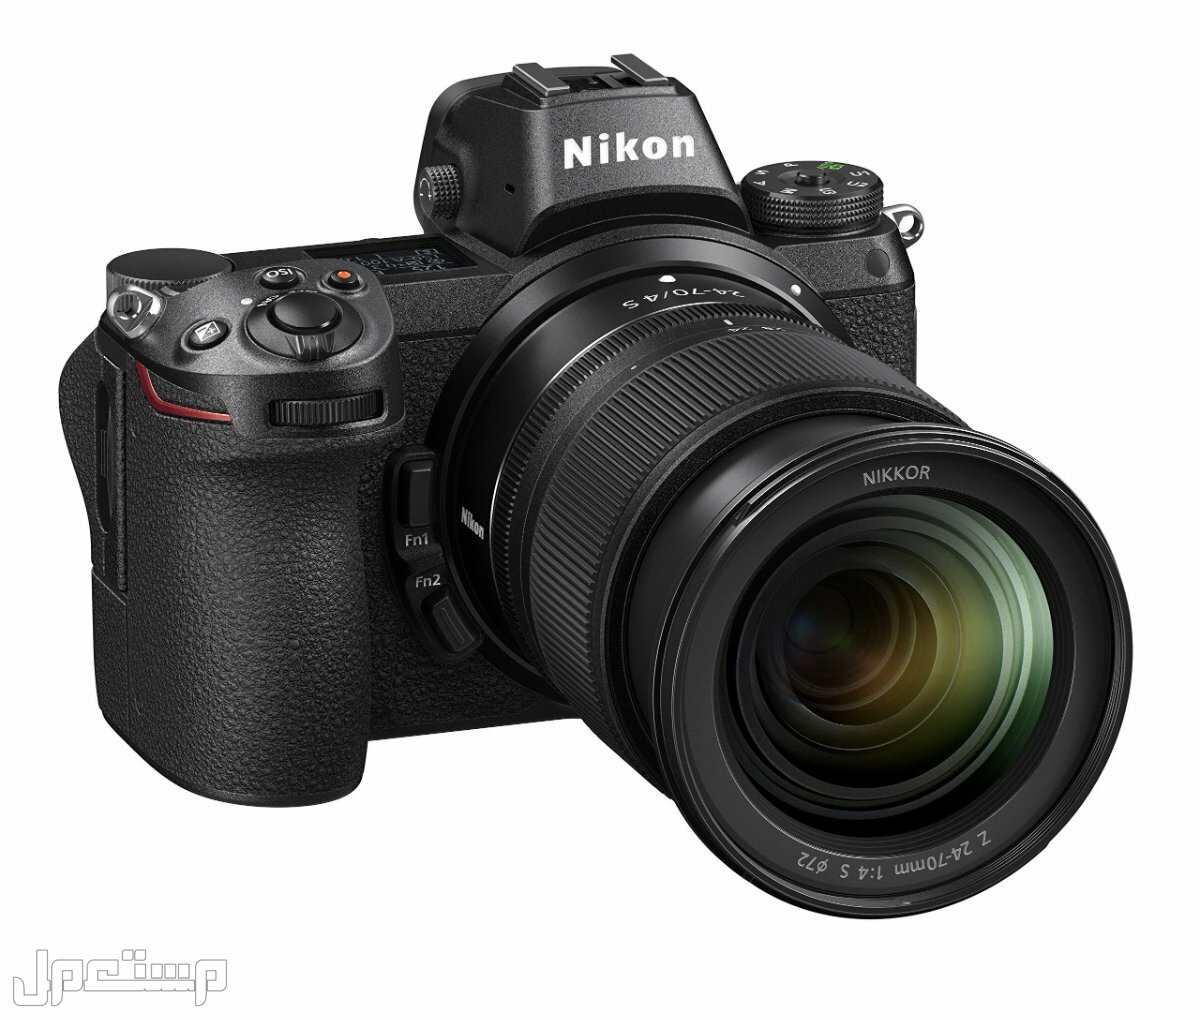 مواصفات ومميزات وأسعار أفضل أنواع كاميرات نيكون للمحترفين في الإمارات العربية المتحدة كاميرا Nikon Z6